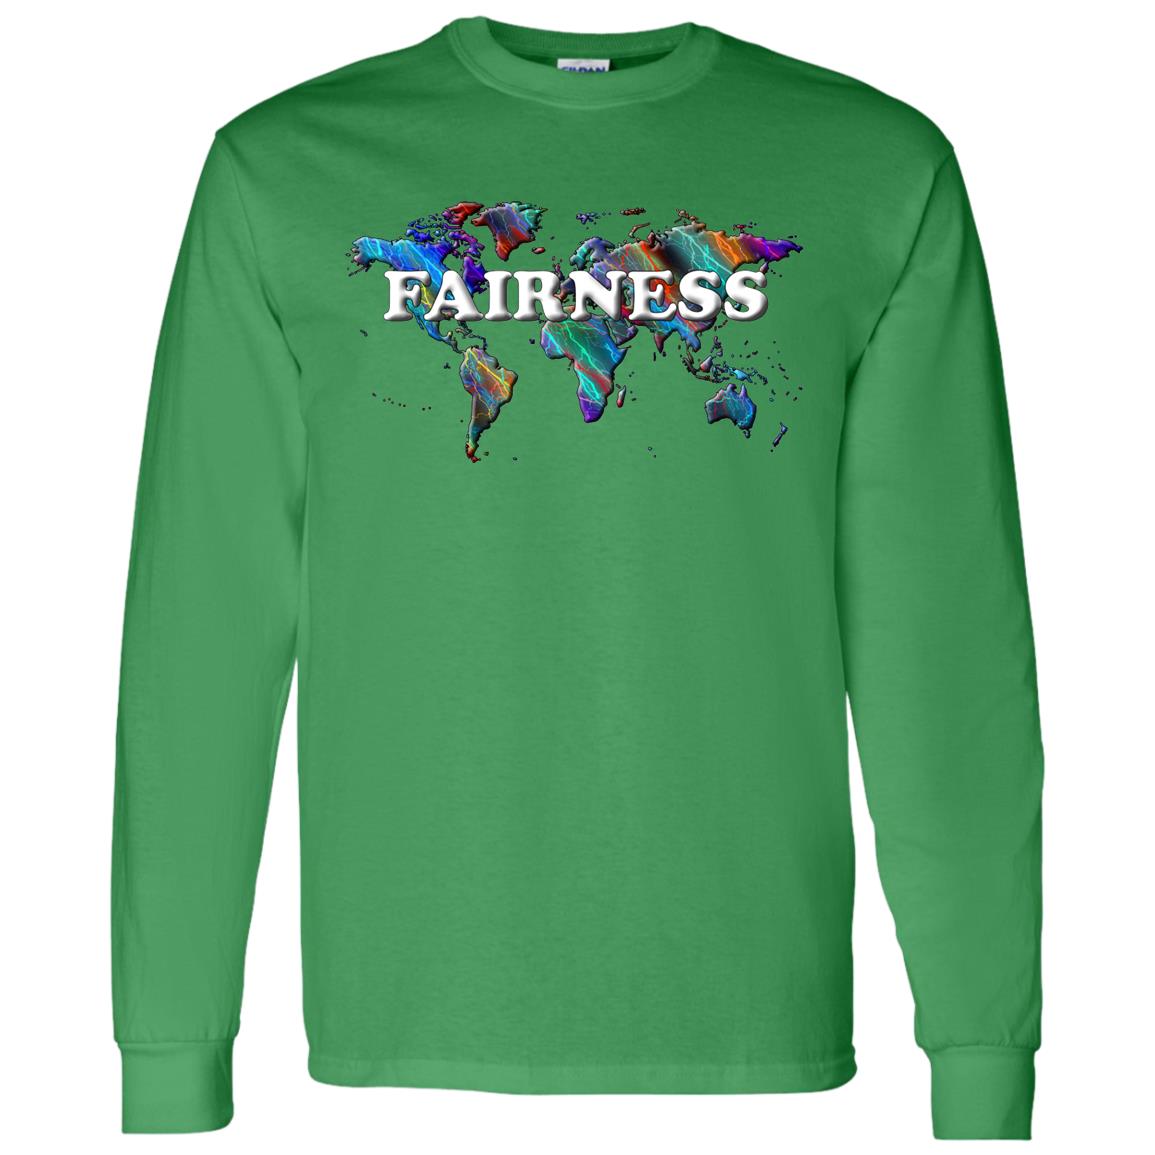 Fairness Long Sleeve T-Shirt